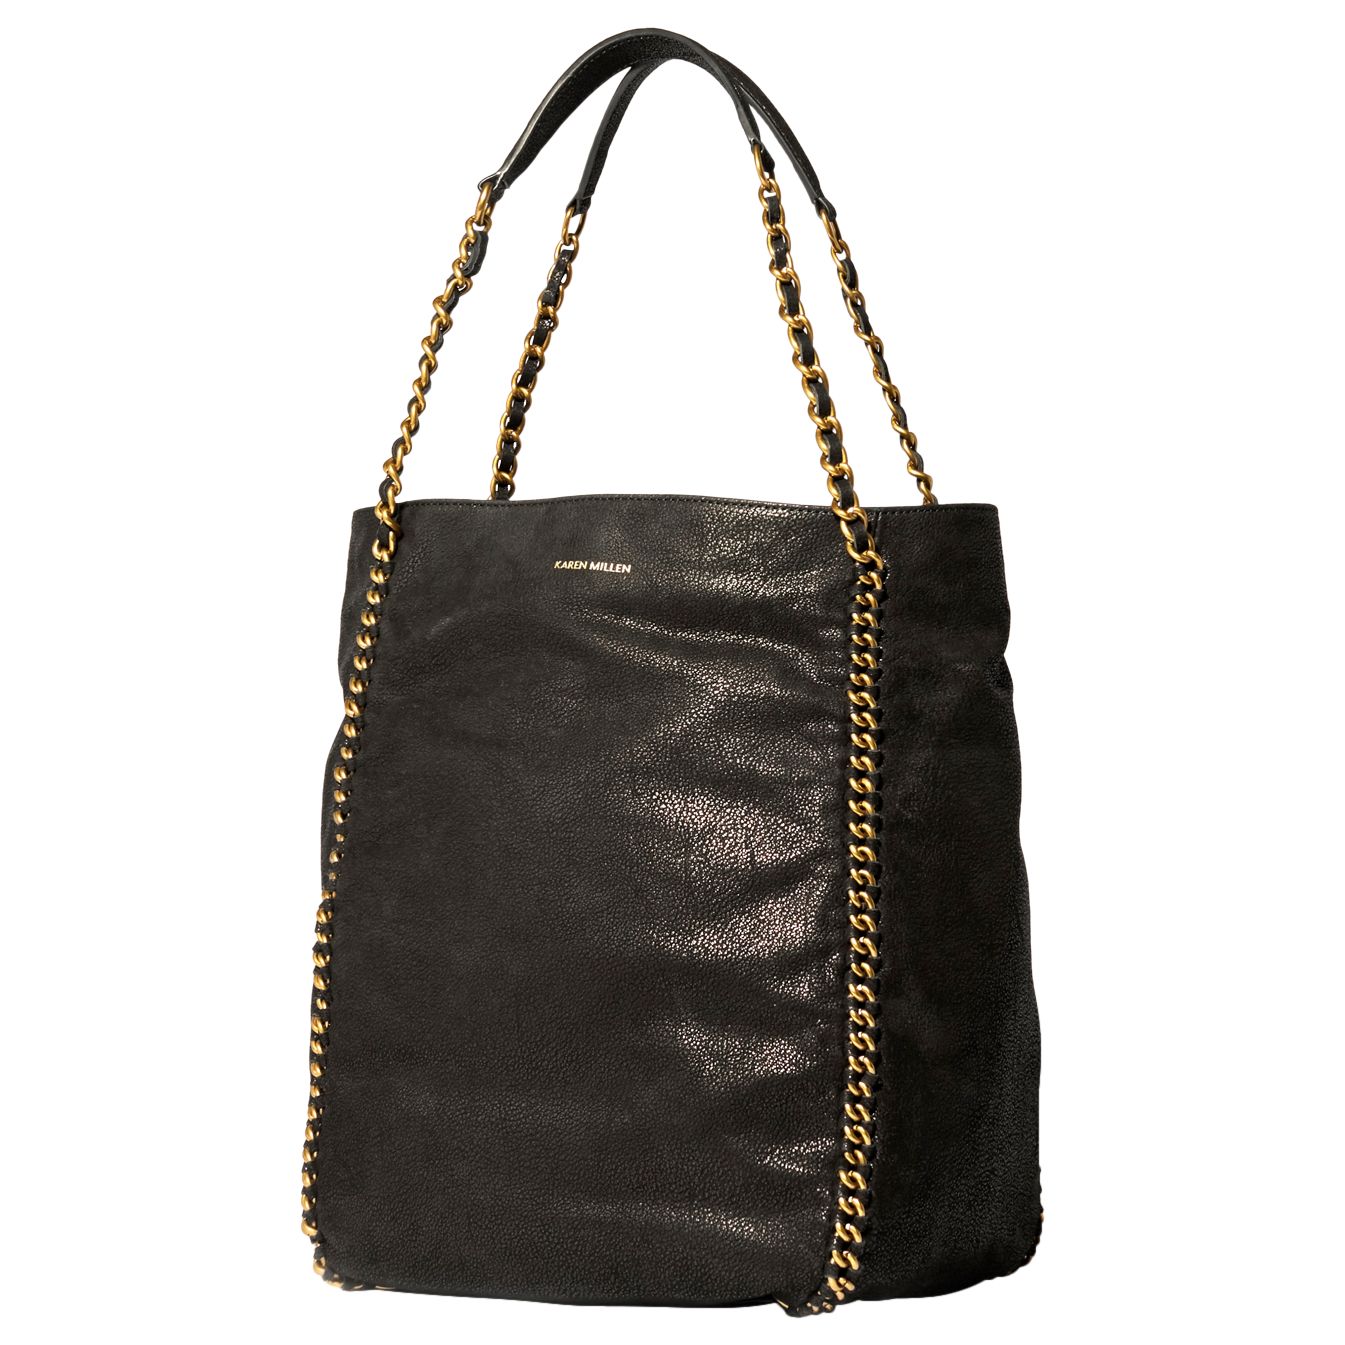 Karen Millen Chain Handle Bucket Bag, Black at John Lewis & Partners